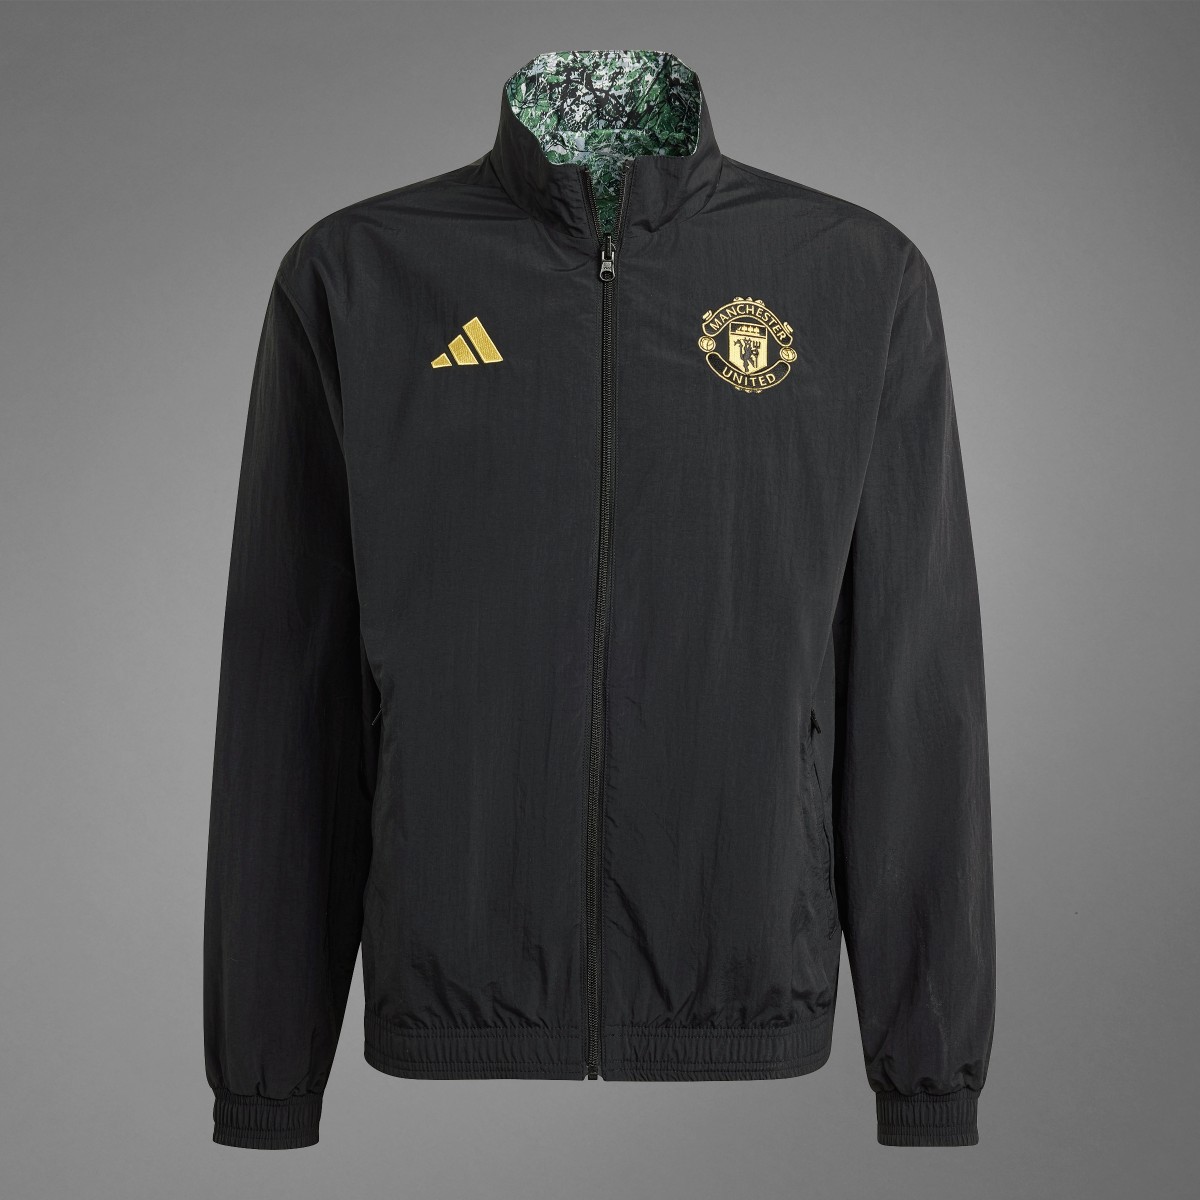 Adidas Manchester United Stone Roses Anthem Jacket. 10